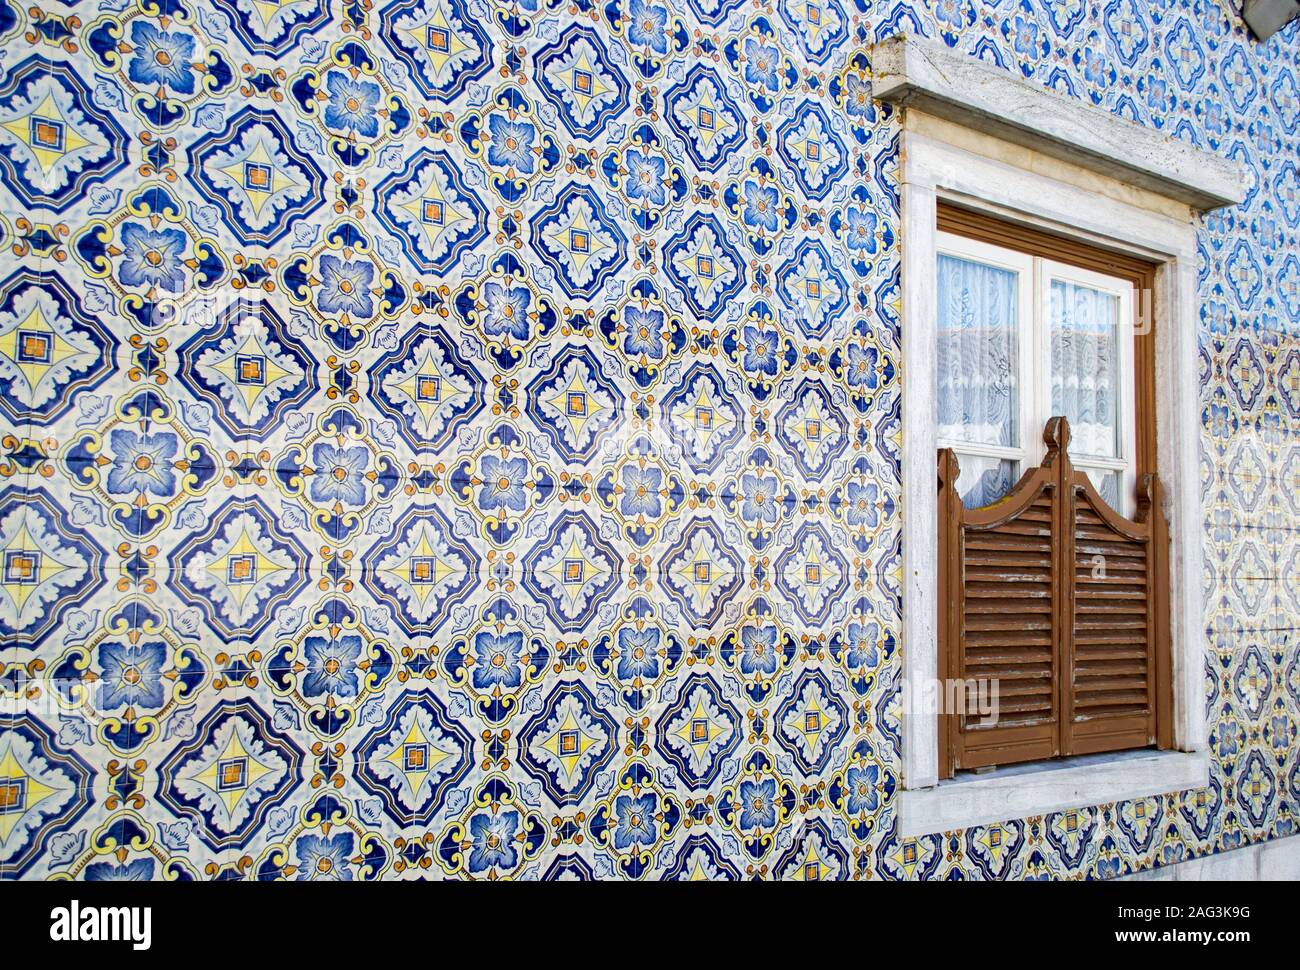 Schuss von orangefarbenen und blauen Mosaikfliesen, die eine Wand bilden Mit einem Fenster in der Mitte Stockfoto